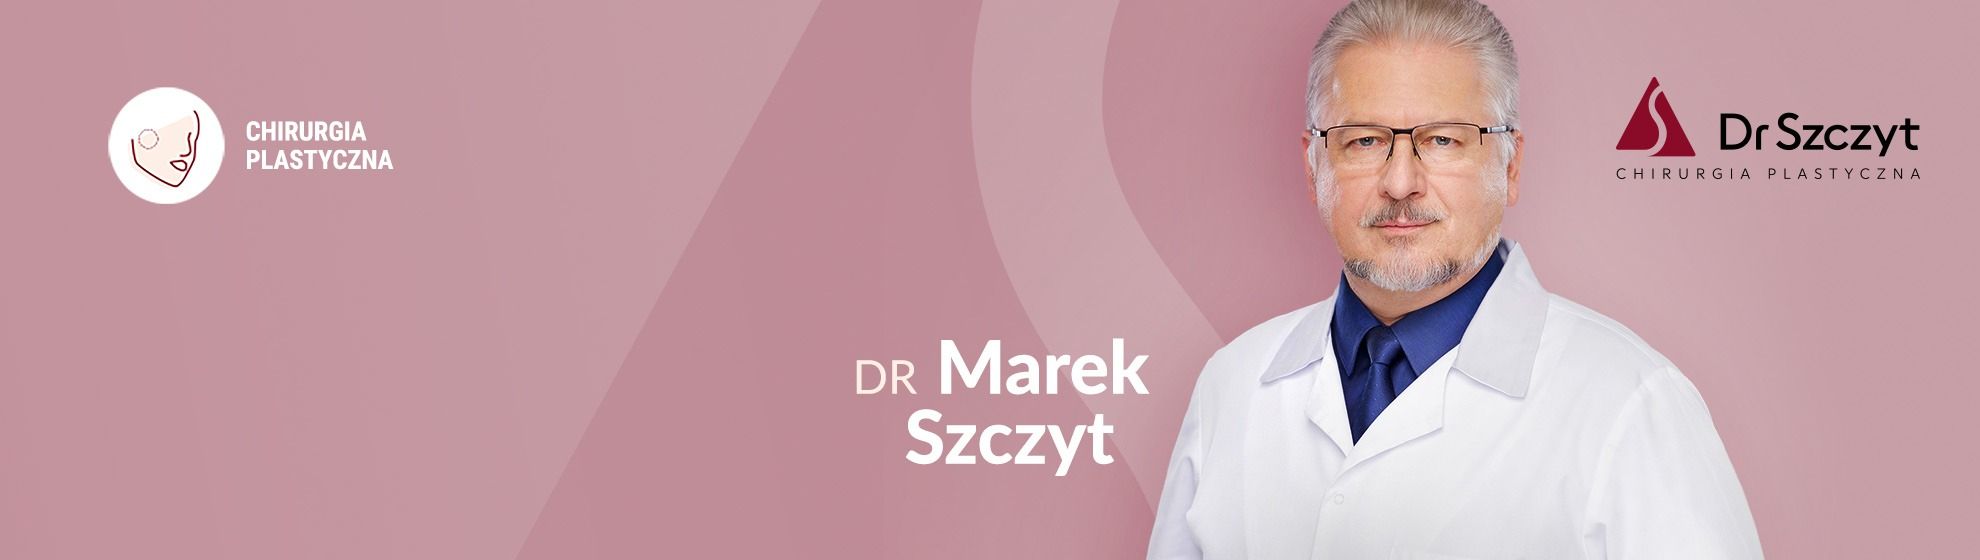 Dr Marek Szczyt